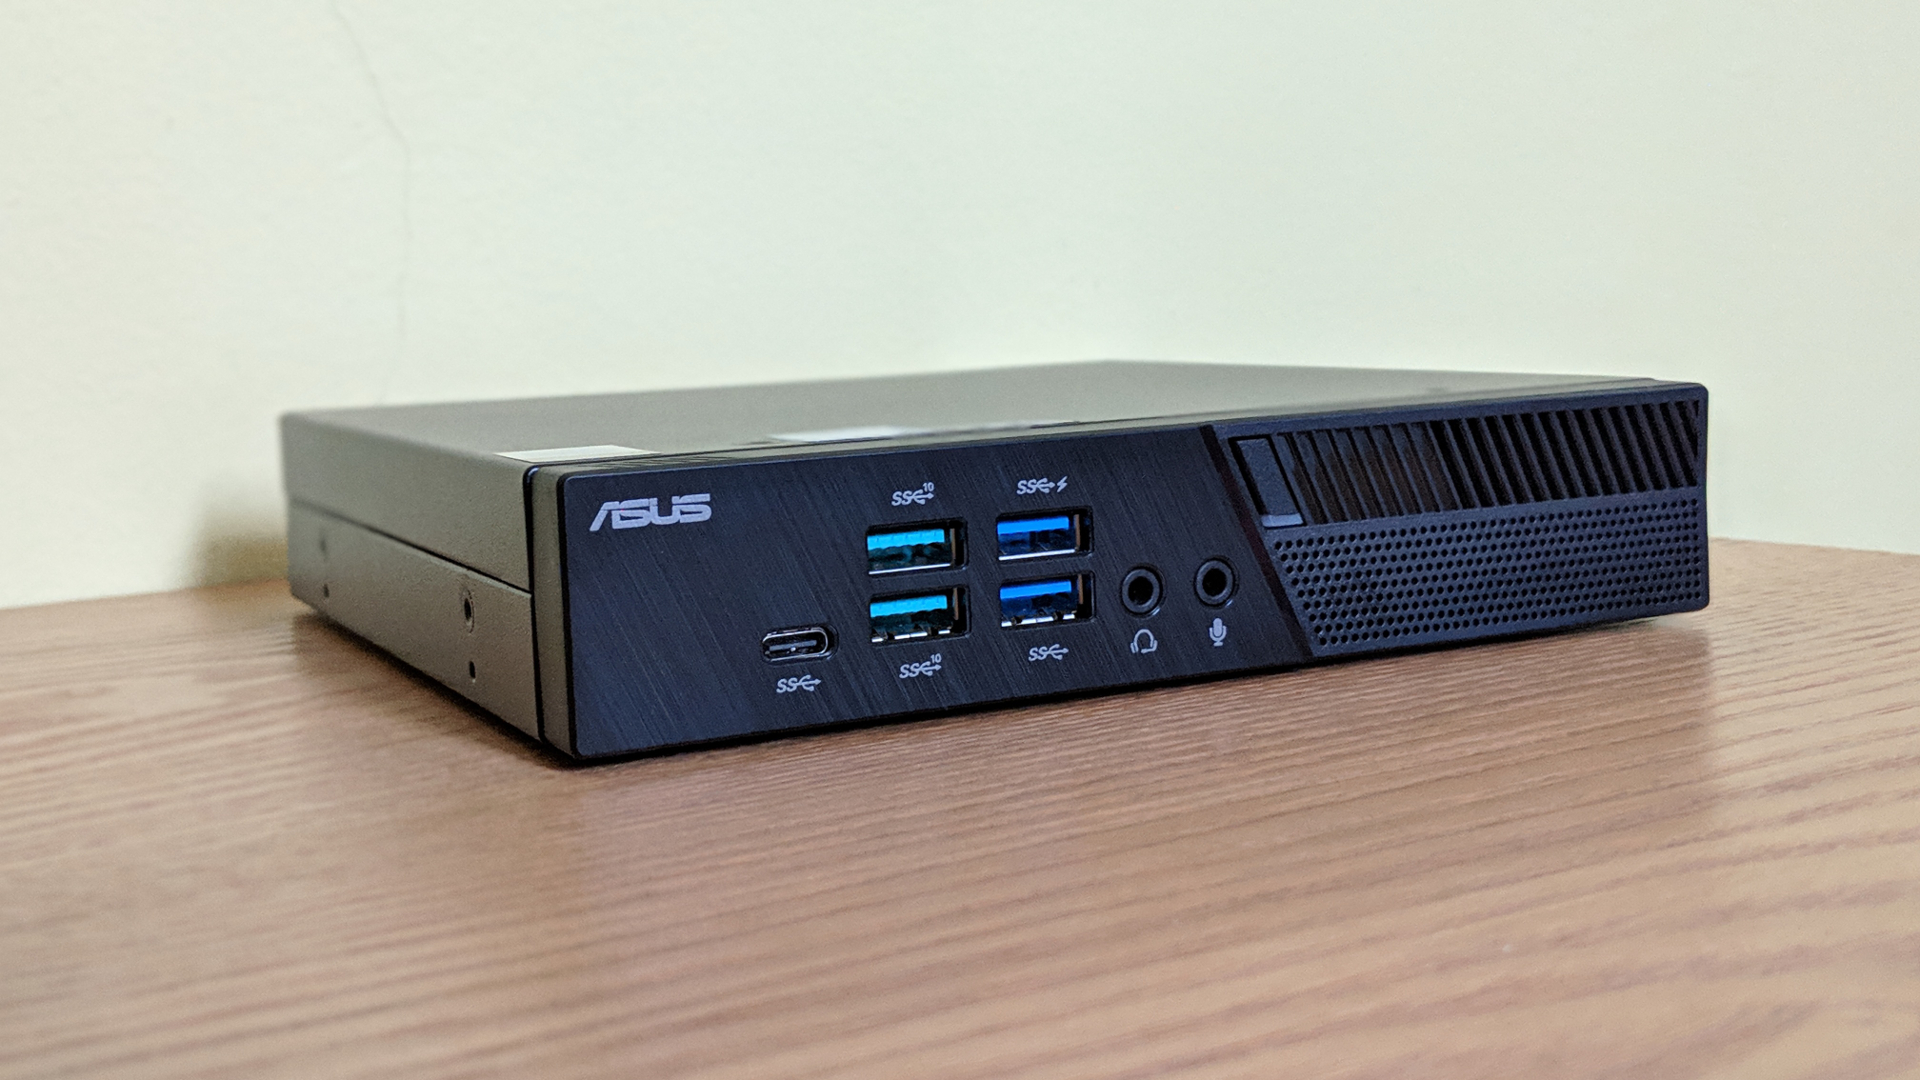 ASUS PB60 Core i3 Ultra Compact Mini PC, Dual Display, COM Port